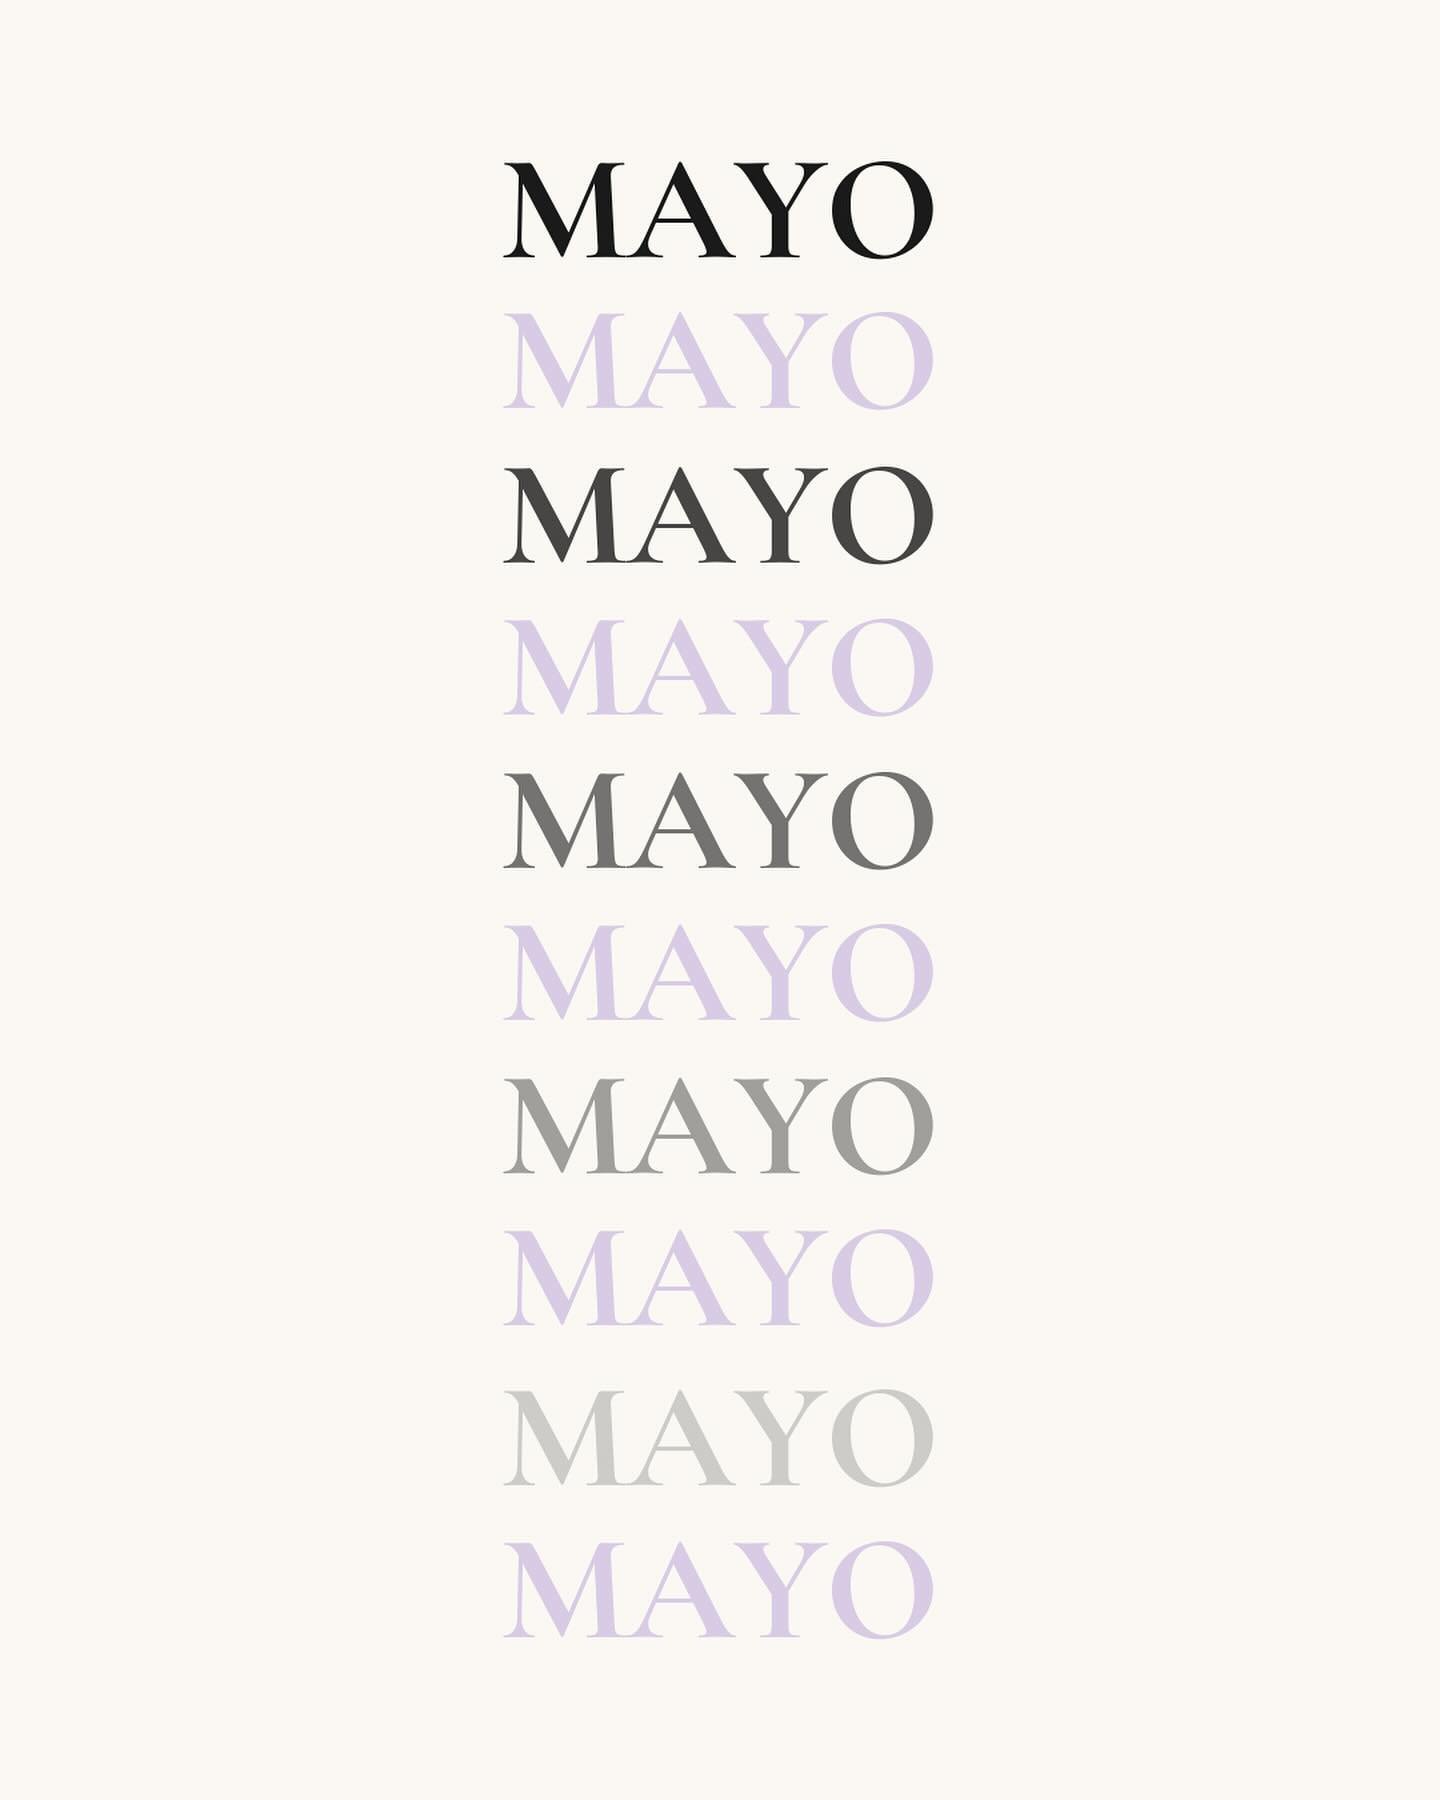 Bienvenido Mayo 🙌🏻

Hola a todas! Sabemos que este &uacute;ltimo tiempo hemos estado mucho.. pero MUY desaparecidas! Y les queremos contar que adem&aacute;s de tener mucho trabajo, hemos estado haciendo demasiaadas modificaciones y ajustes en MIA S